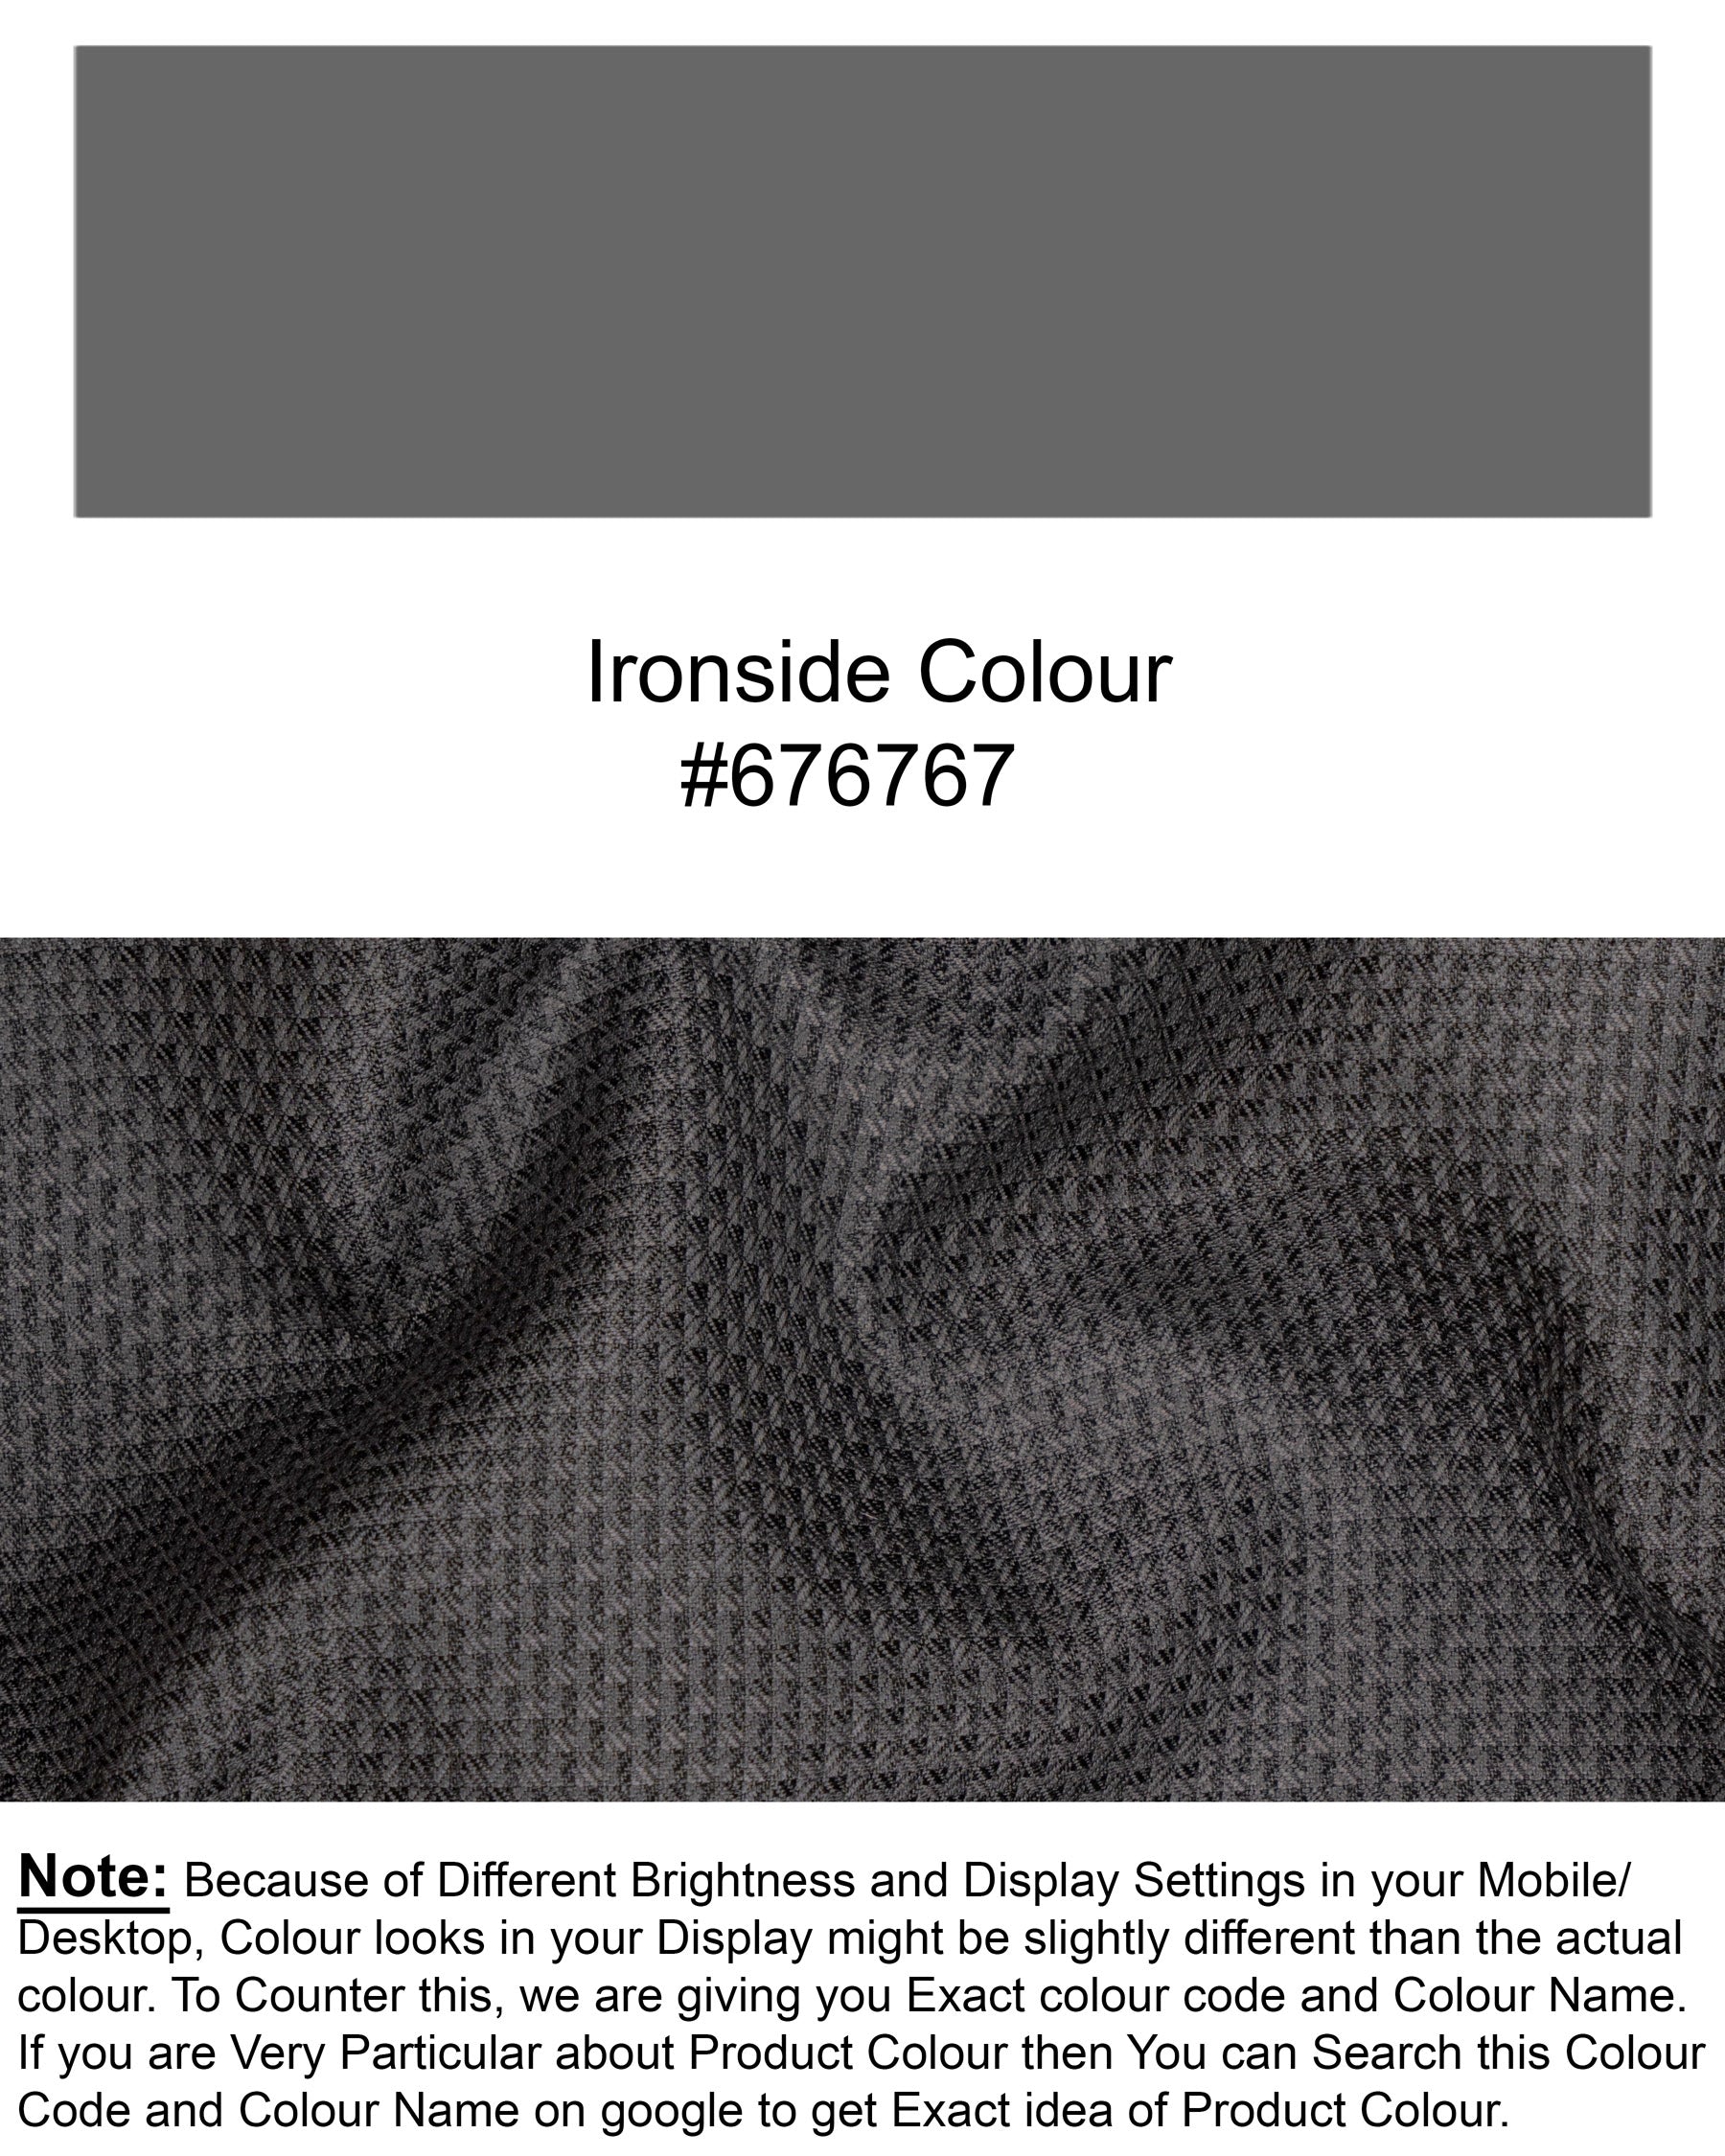 Ironside Grey With Black Patterned Designer Woolrich Blazer BL1581-SB-D19-36, BL1581-SB-D19-38, BL1581-SB-D19-40, BL1581-SB-D19-42, BL1581-SB-D19-44, BL1581-SB-D19-46, BL1581-SB-D19-48, BL1581-SB-D19-50, BL1581-SB-D19-52, BL1581-SB-D19-54, BL1581-SB-D19-56, BL1581-SB-D19-58, BL1581-SB-D19-60